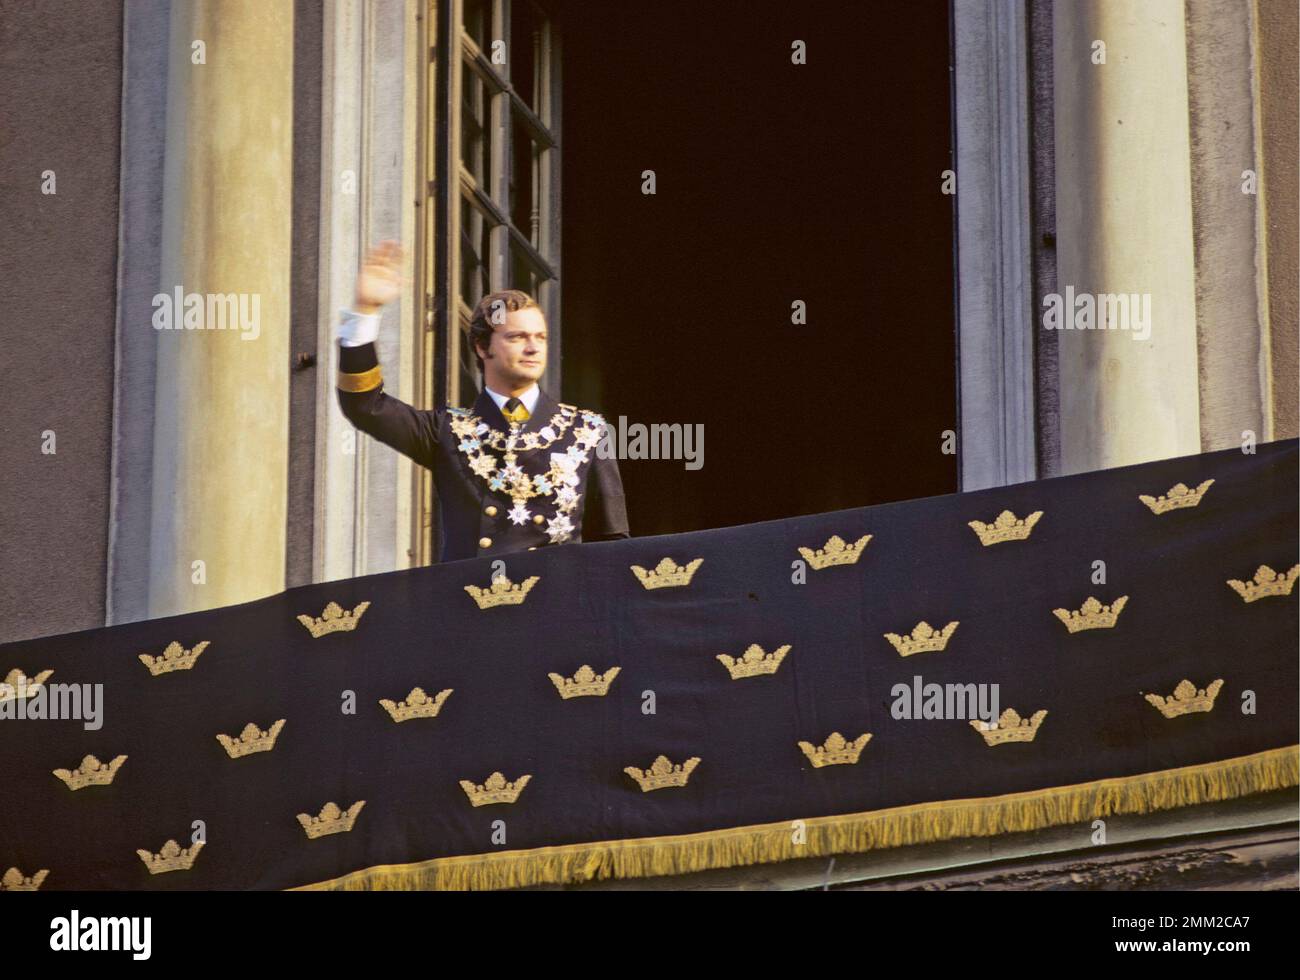 Carl XVI Gustaf, re di Svezia. Nato il 30 aprile 1946. Mercoledì 19 settembre 1973, il nuovo re giurò il giuramento reale davanti al governo nella camera del consiglio. Comparve poi davanti al Riksdag, al corpo diplomatico e alla Corte nel Rikssalen al Palazzo reale. Lì, secondo la tradizione, diede un discorso commemorativo per il monarca deceduto. Il Consiglio e la cerimonia del Rikssalen sono stati trasmessi in diretta in TV. Più di 25.000 persone si erano riunite a Norrbro per rendere omaggio e ricevere il nuovo reggente, Carl XVI Gustaf. Il re adottò "per la Svezia - nel tempo" come l'electio Foto Stock